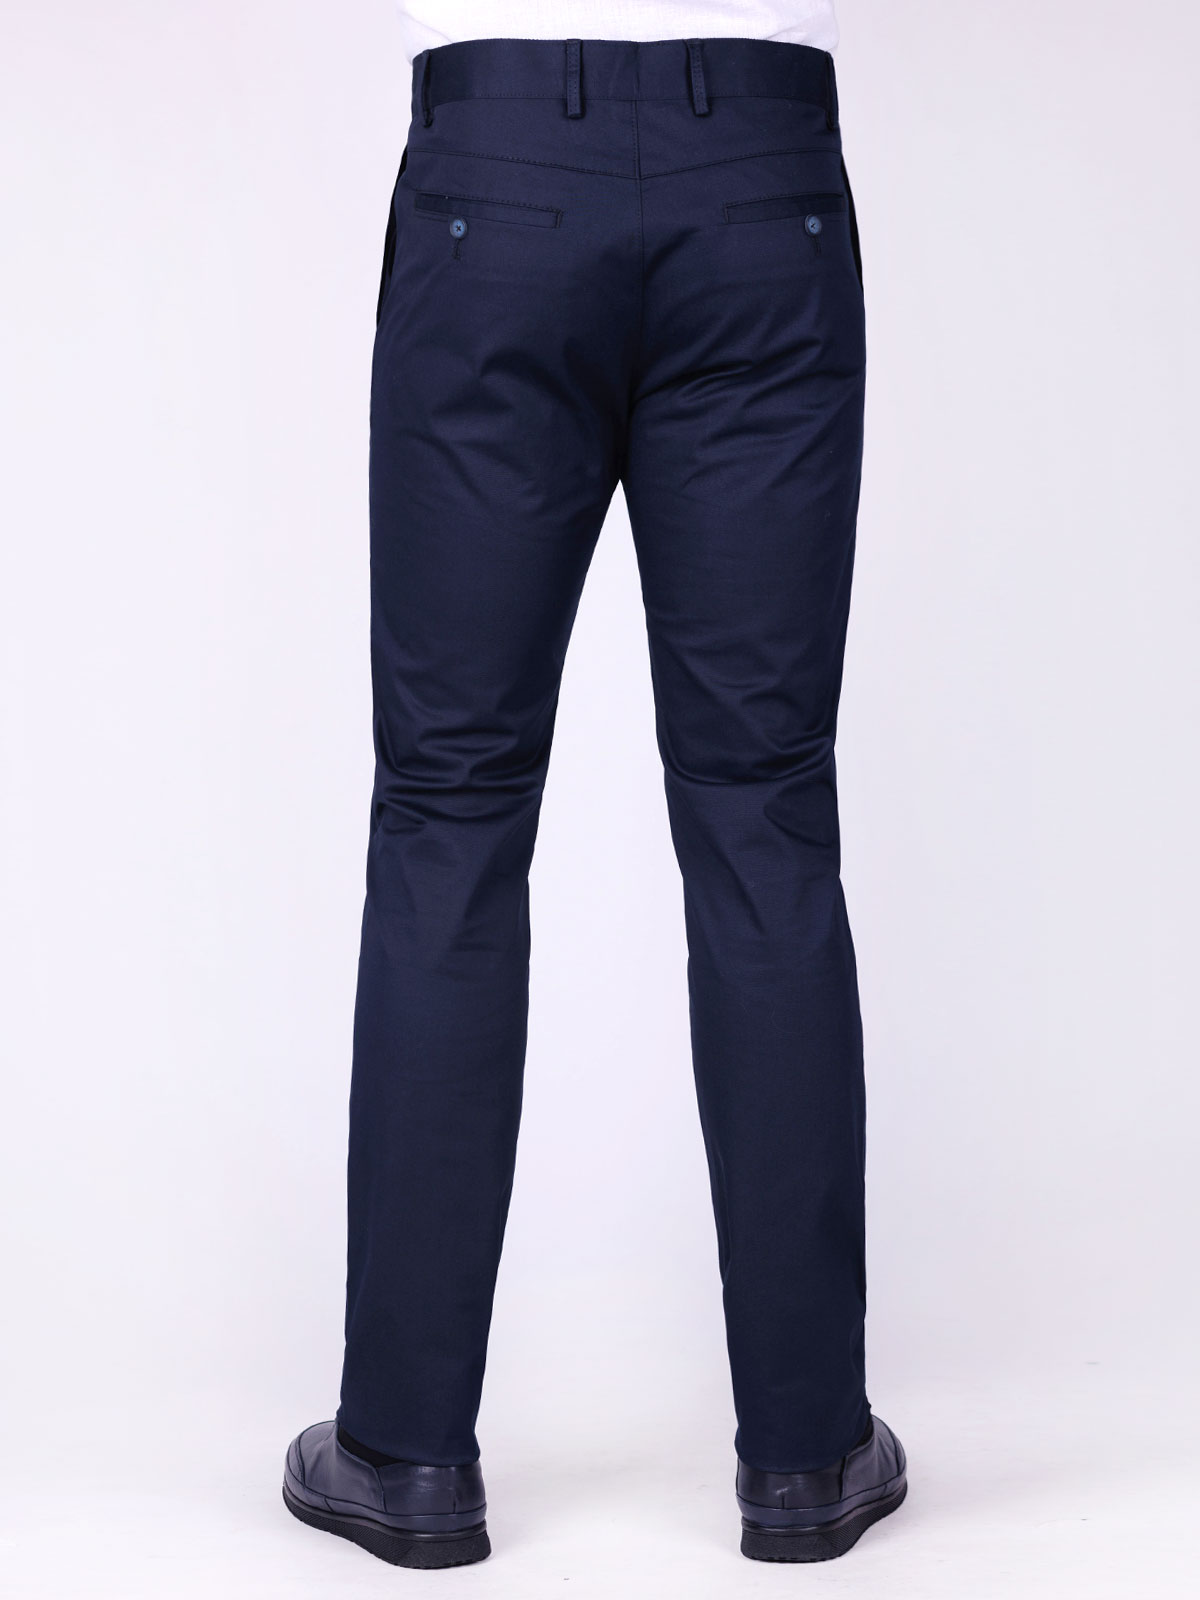 Σπορ κομψό παντελόνι σε μπλε χρώμα - 60287 € 53.43 img3